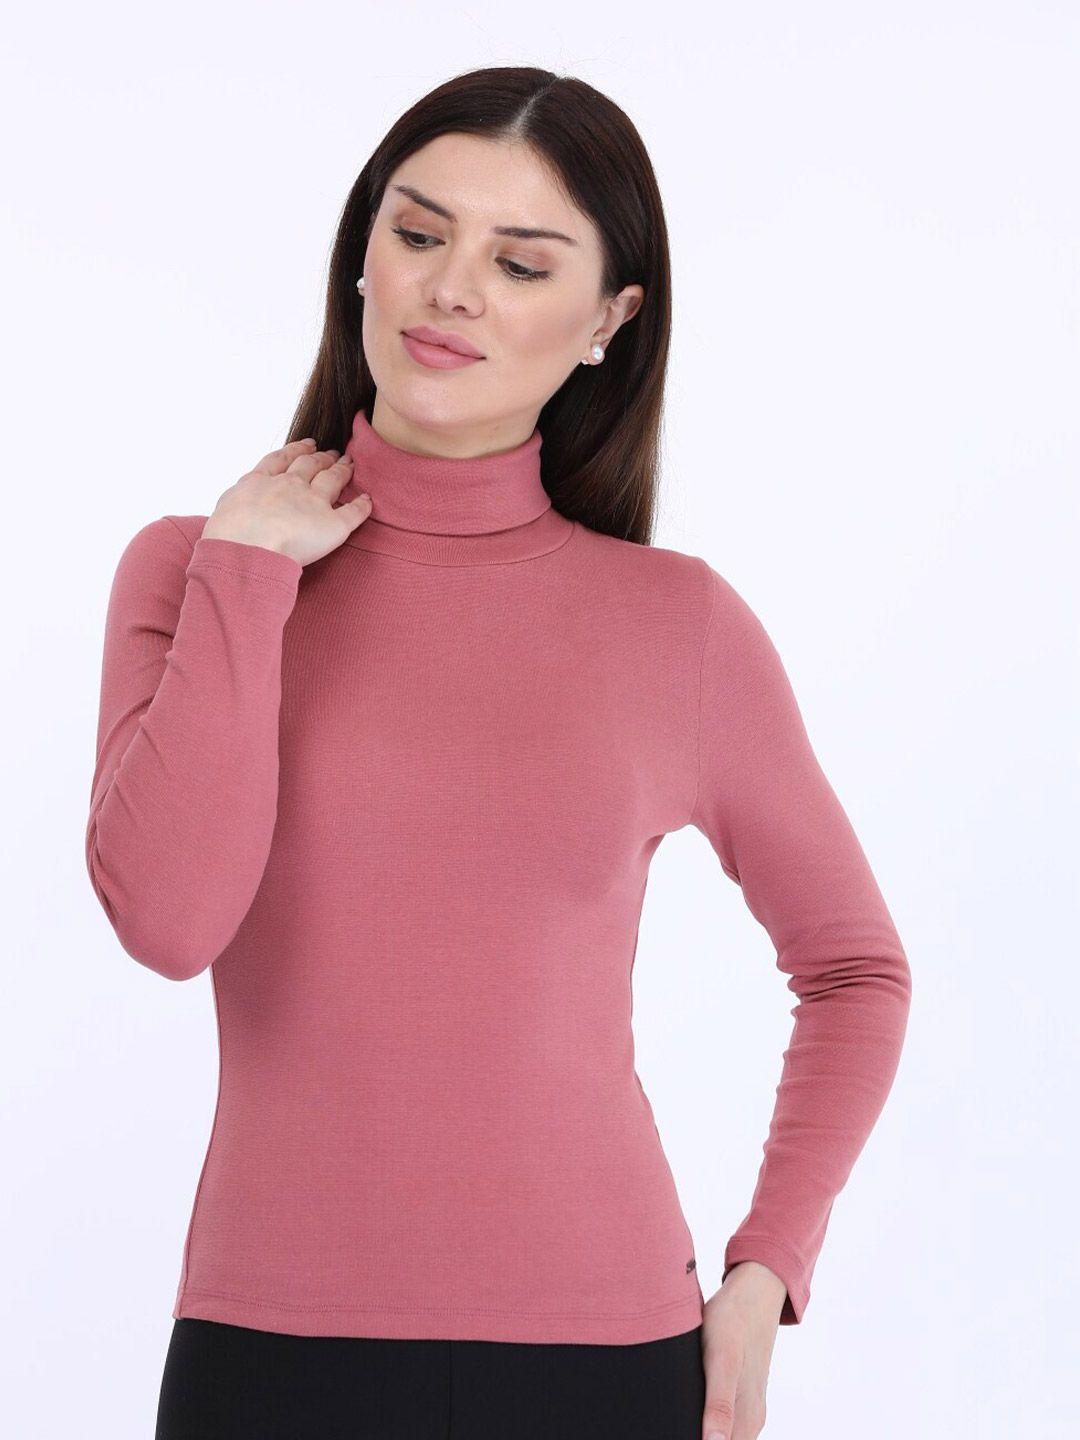 maysixty women pink high neck t-shirt